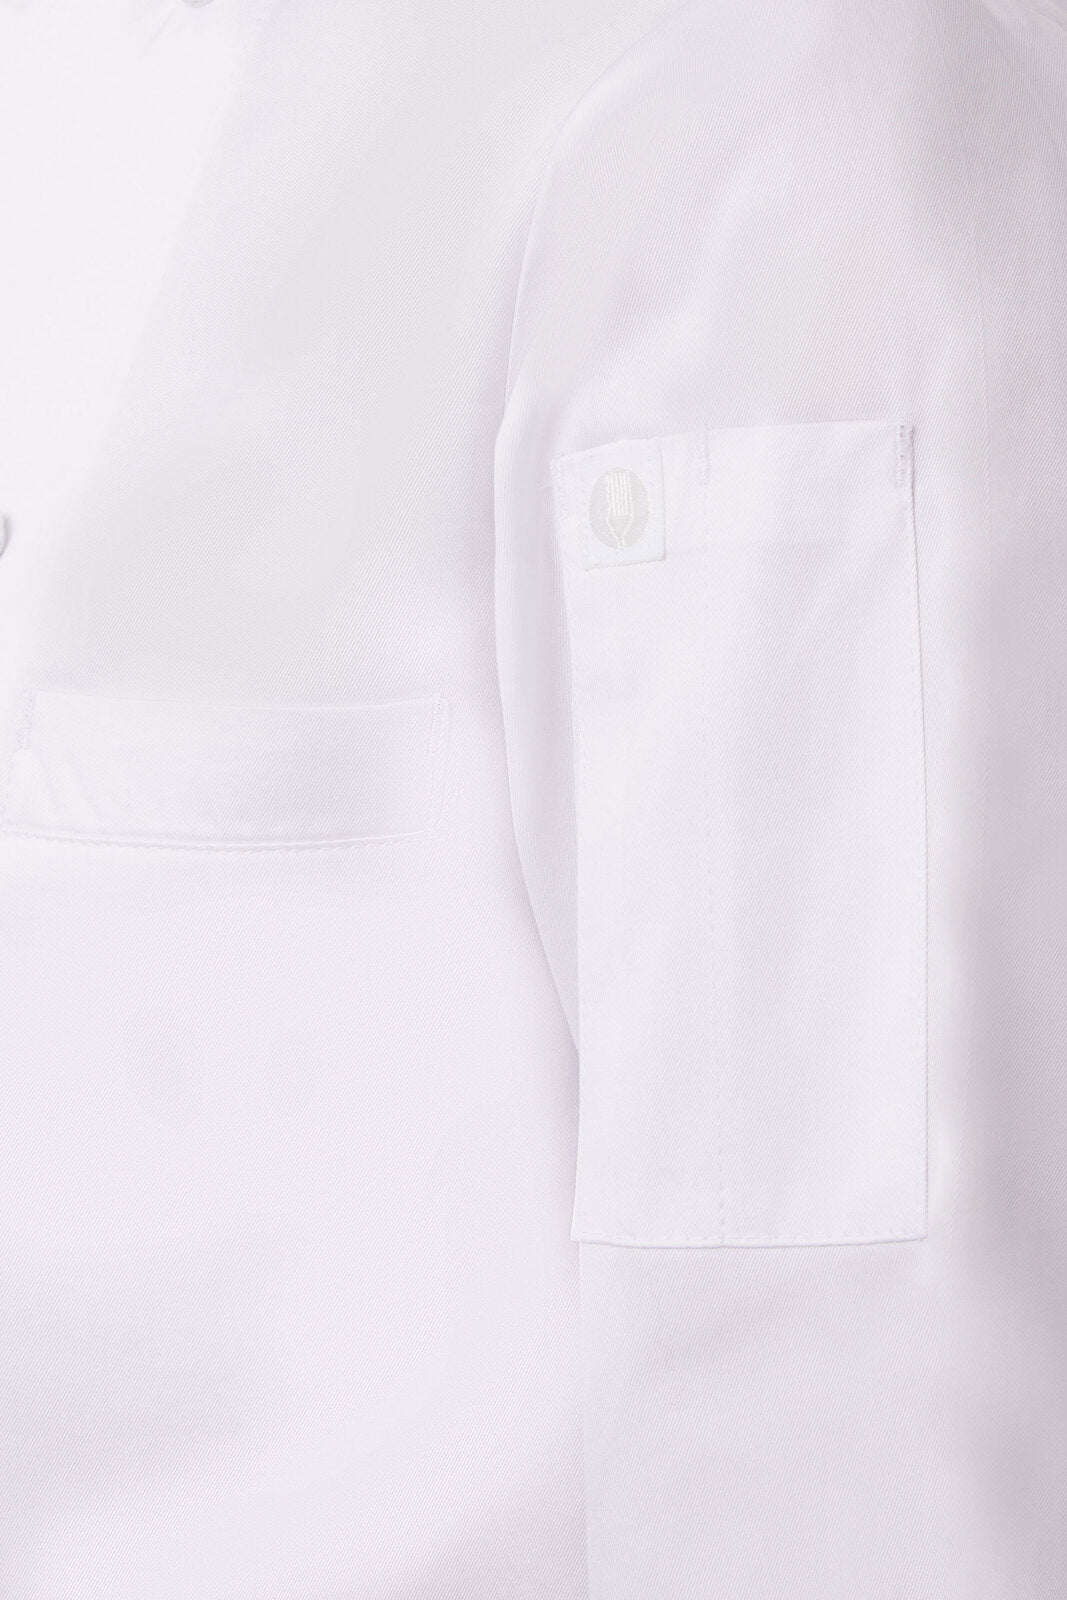 Chef Works - Madrid Premium Cotton Chef Jacket